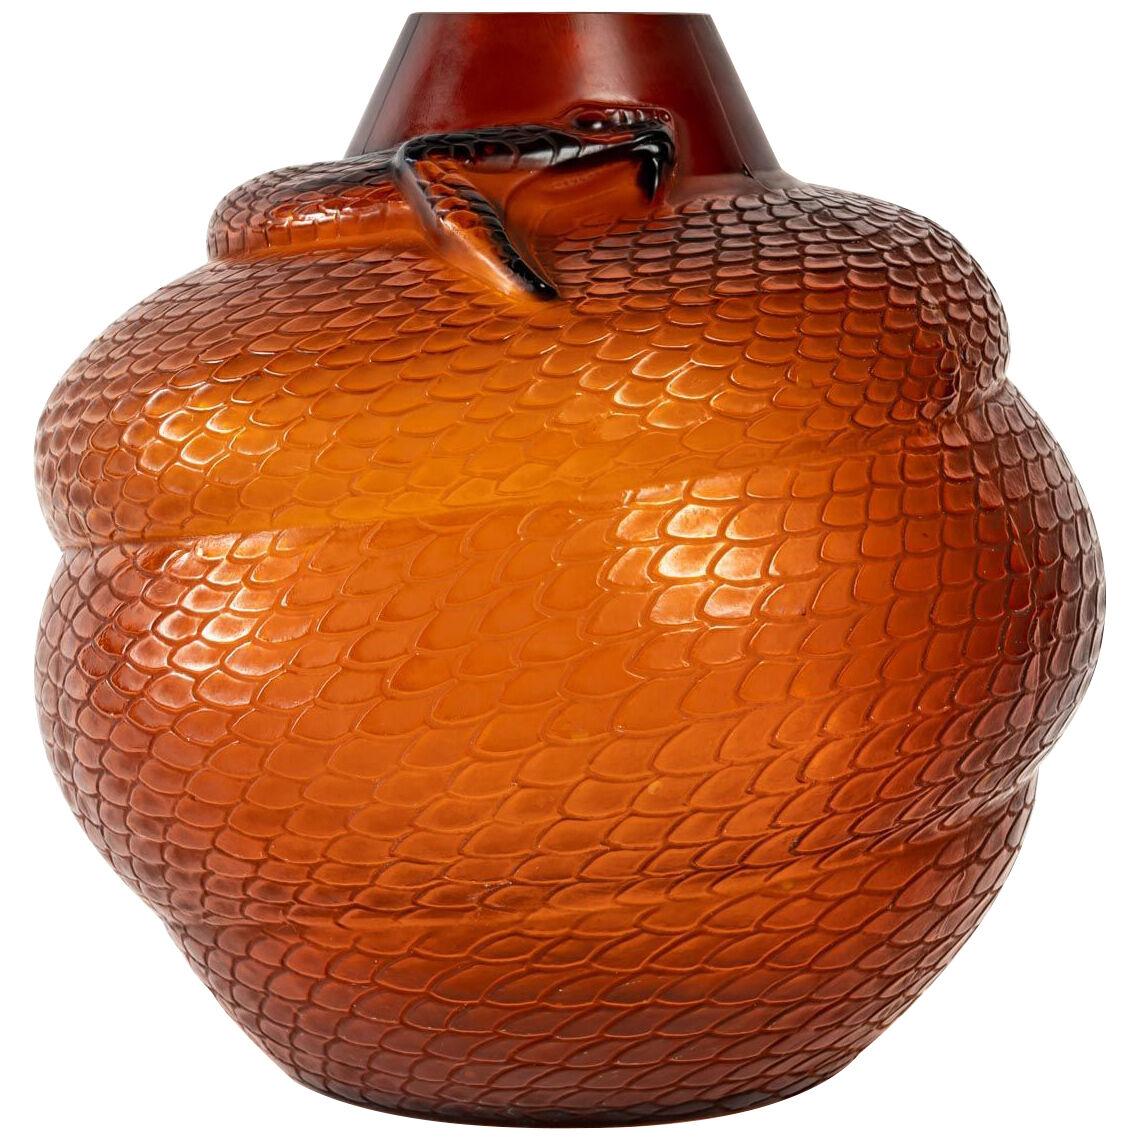 1924 René Lalique - Vase Serpent Orange Amber Glass - Snake